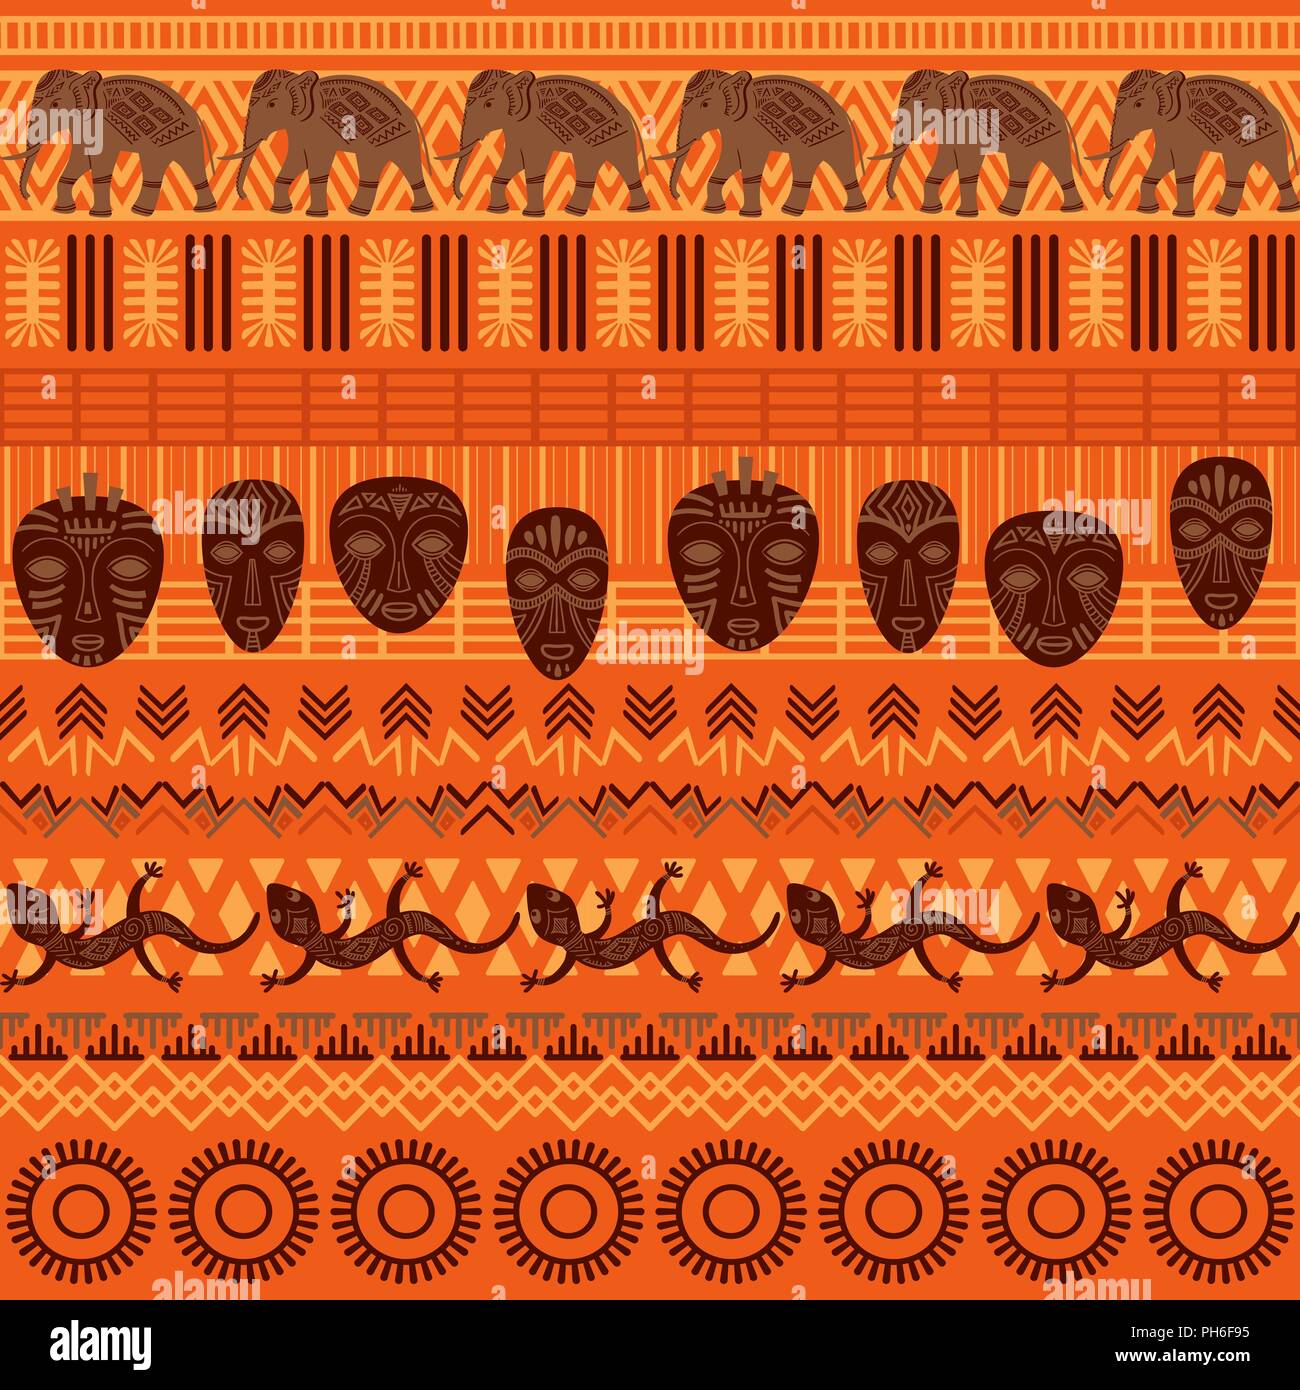 Ethnique Tribal modèle homogène. Ornement géométrique abstraite avec des motifs africains. Vector illustration. Parfait pour l'impression textile, papier peint, tissu design, tissu, papier d'emballage et en dessins de tissu. Illustration de Vecteur